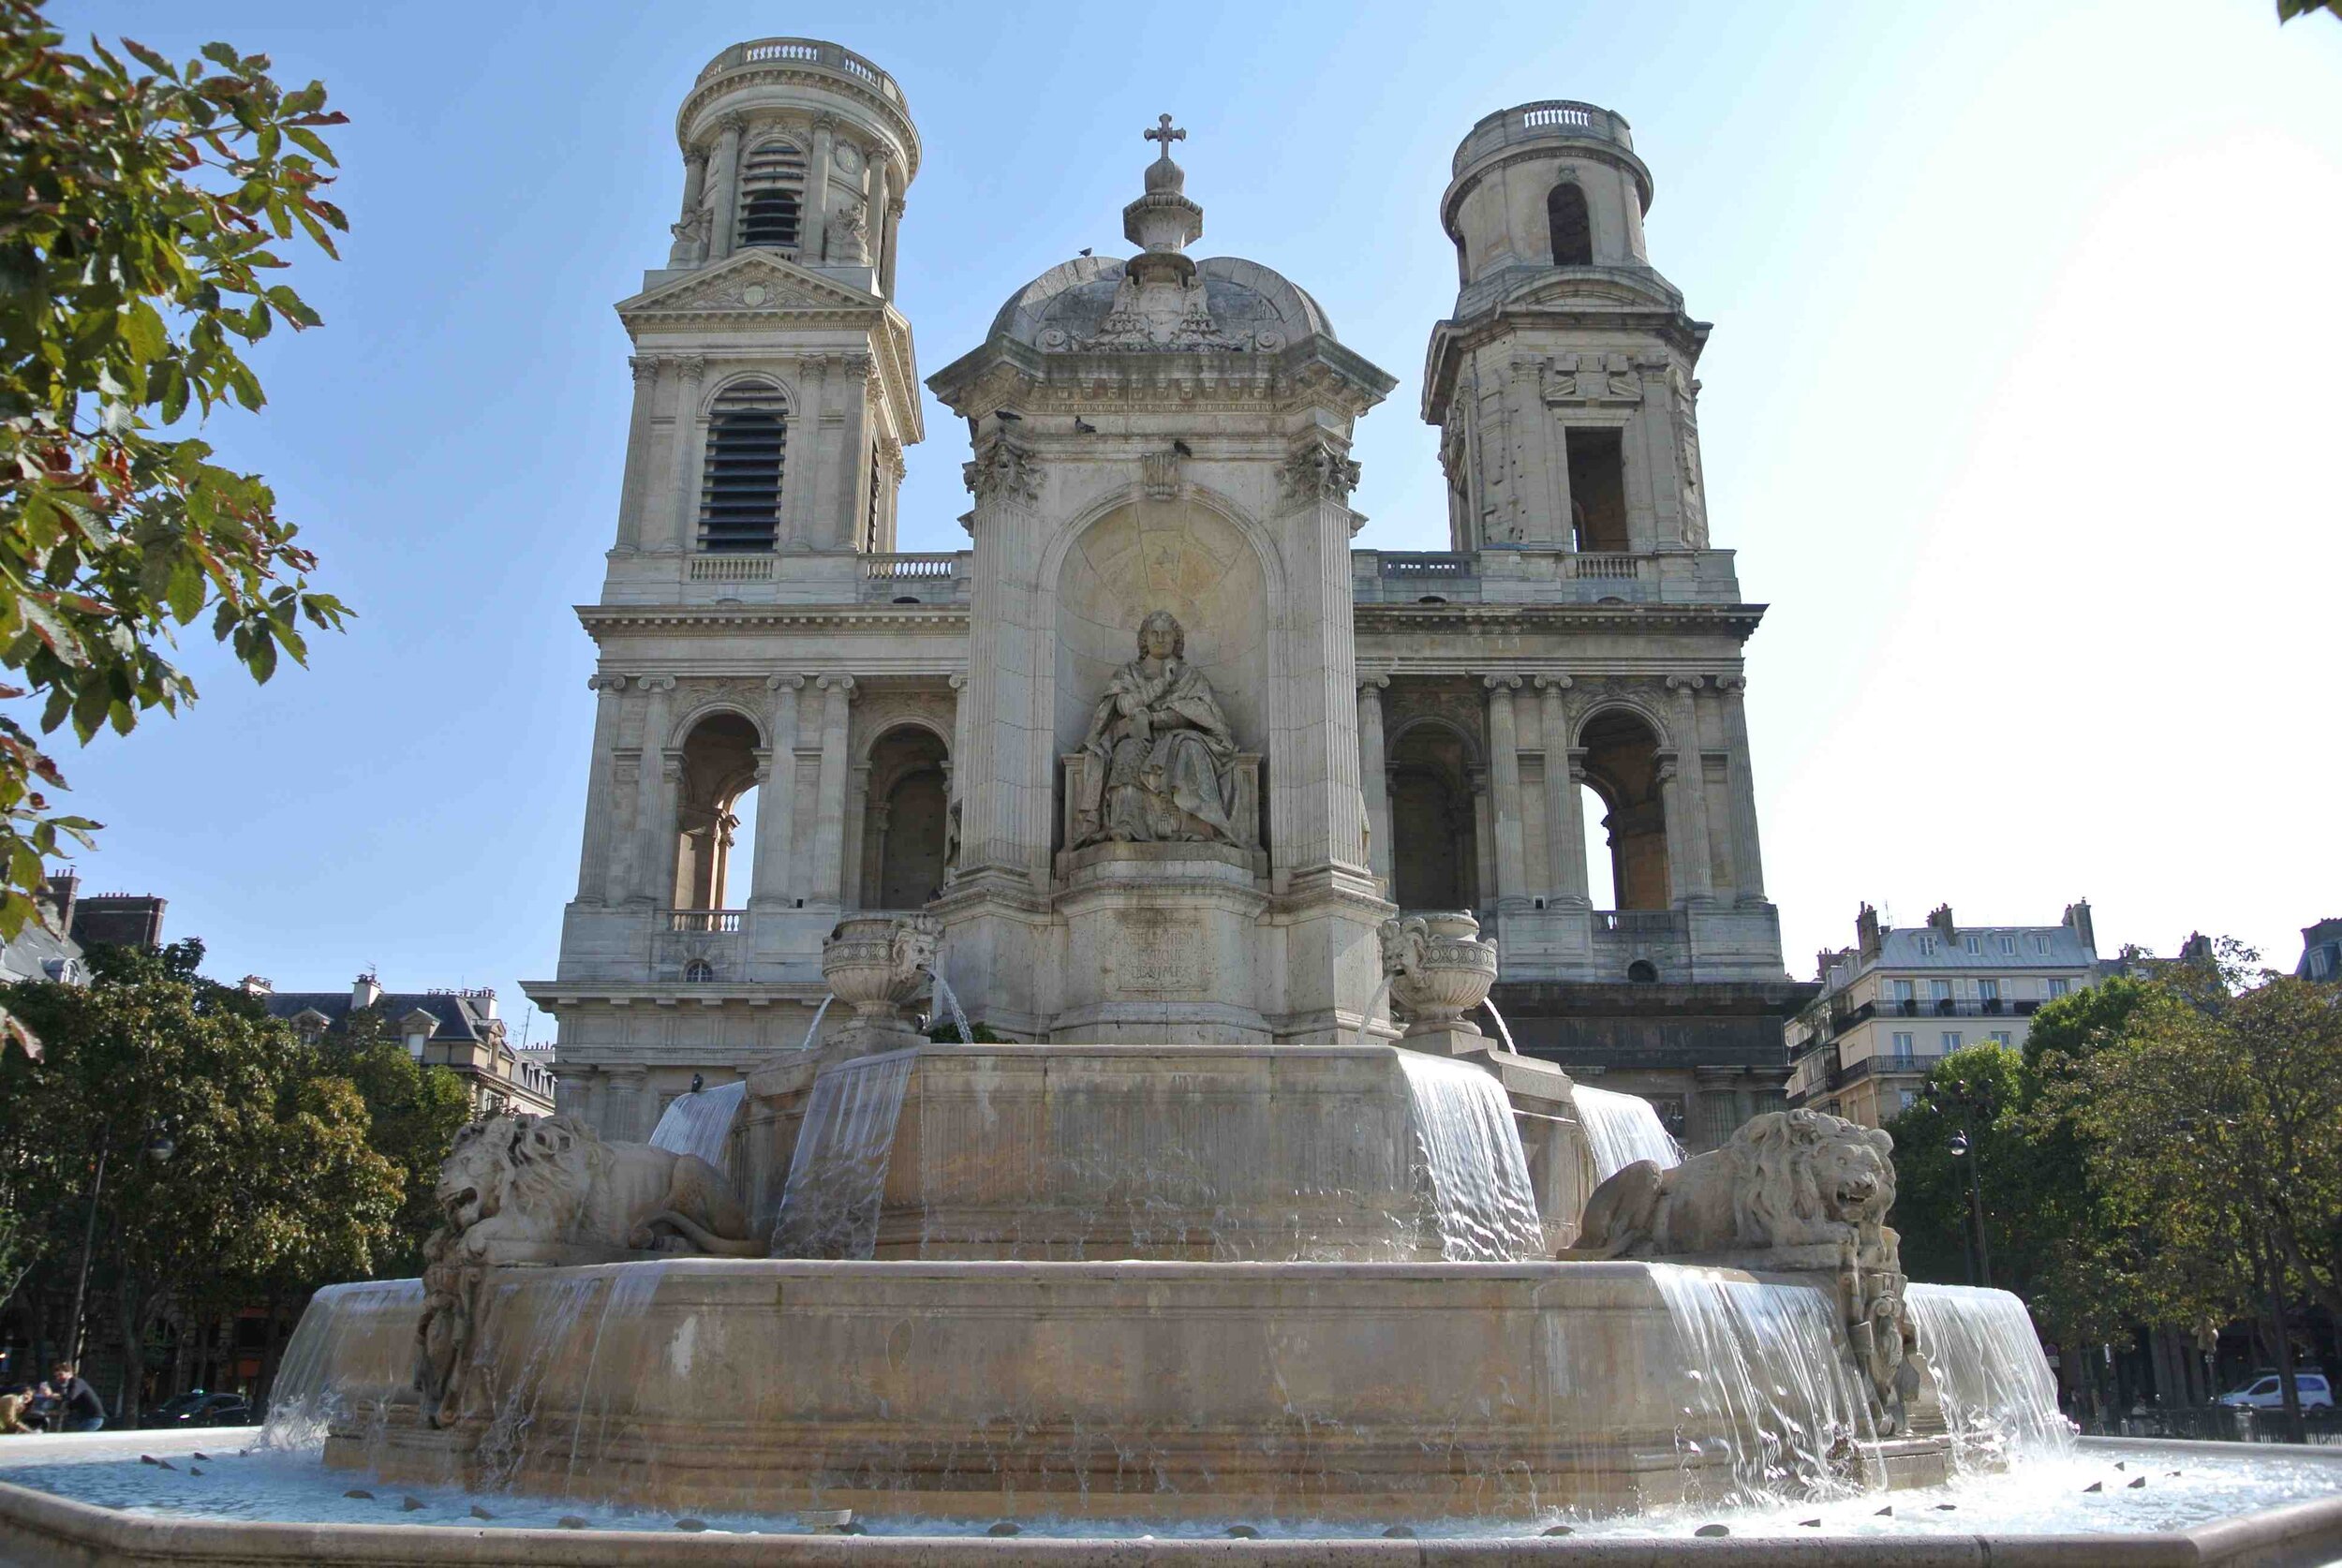 Saint-Sulpice Fountain